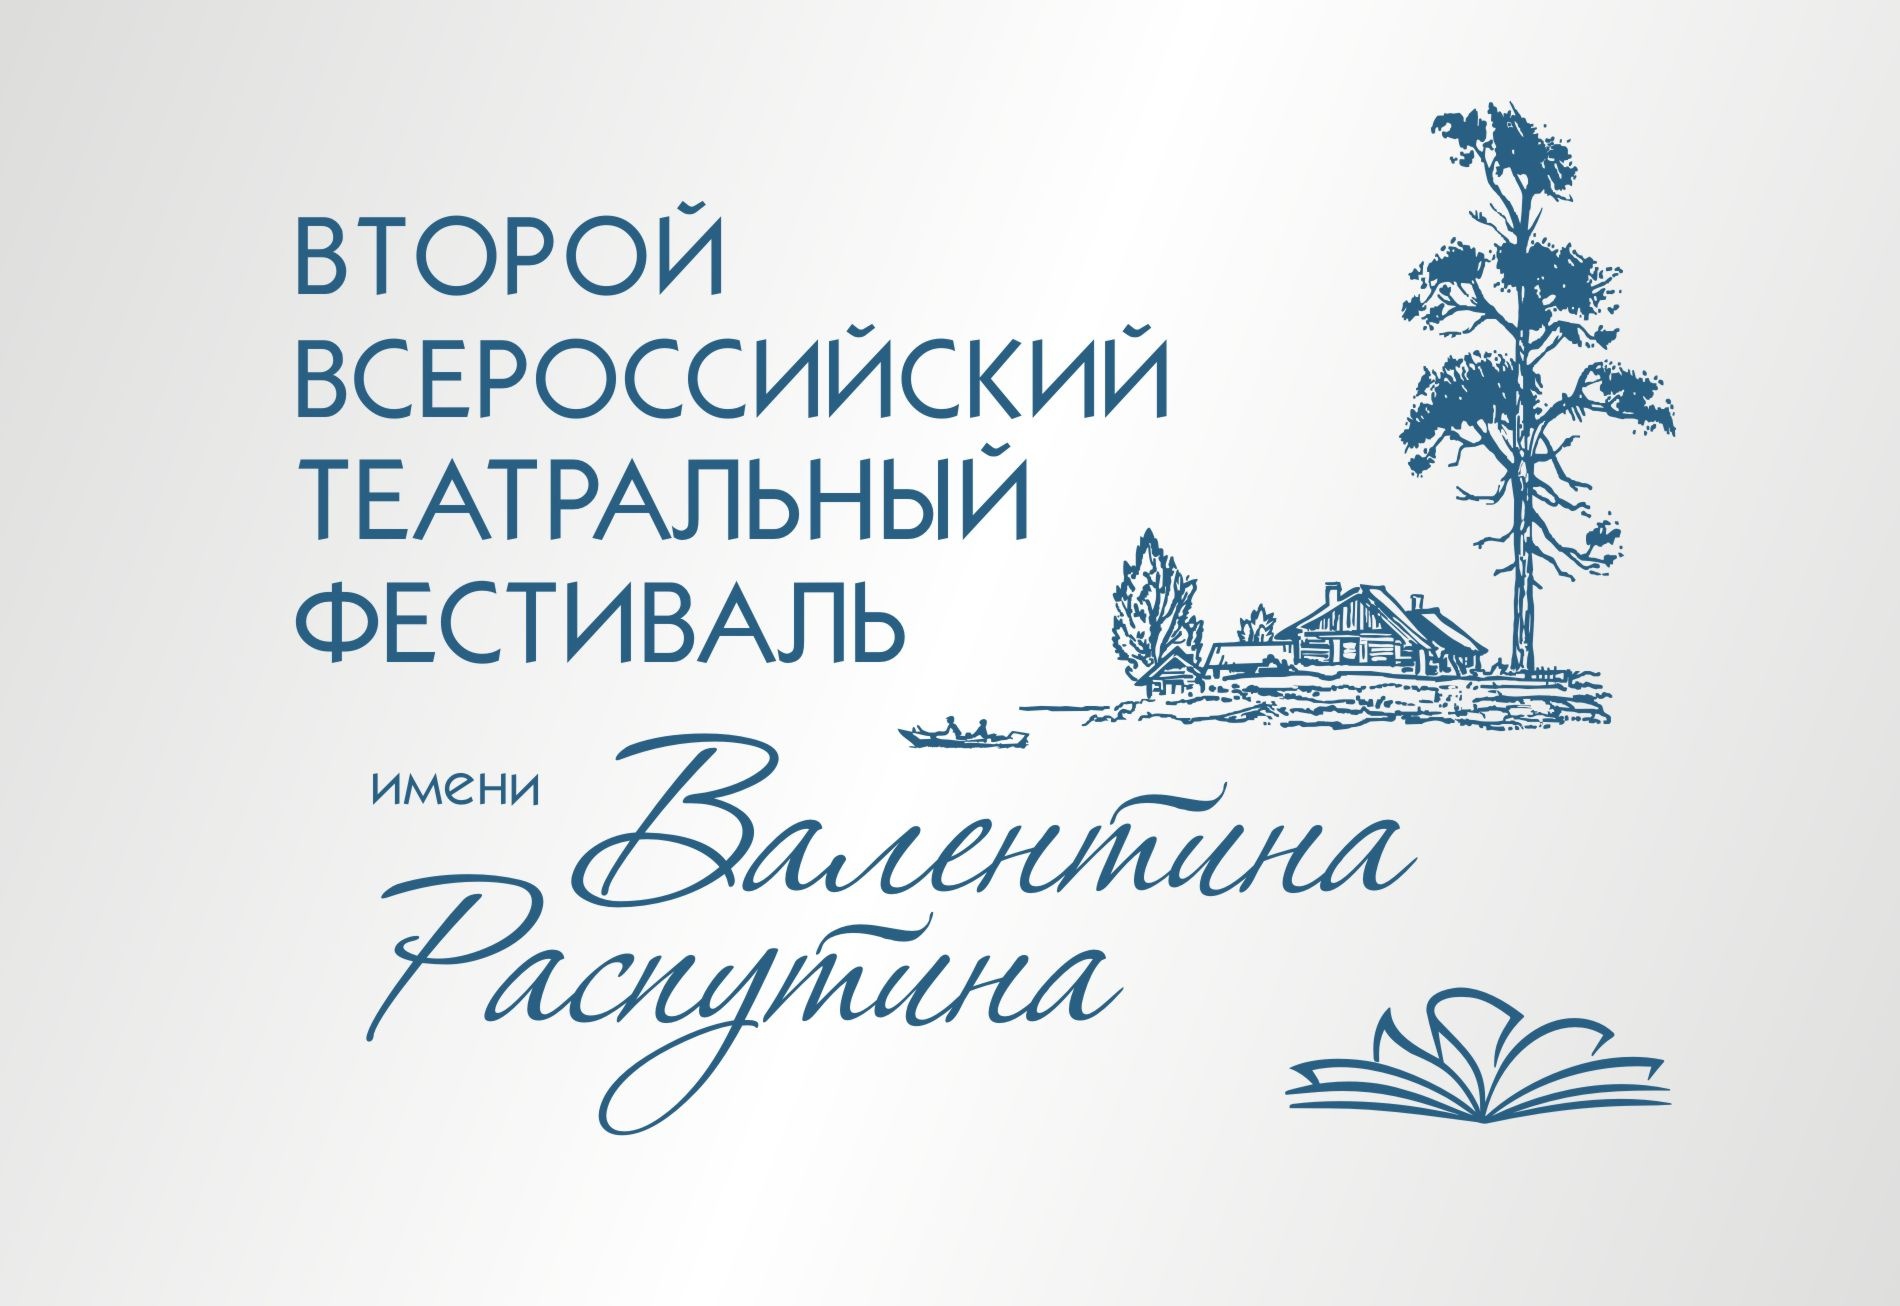 Второй всероссийский театральный фестиваль им. Валентина Распутина откроется 15 марта